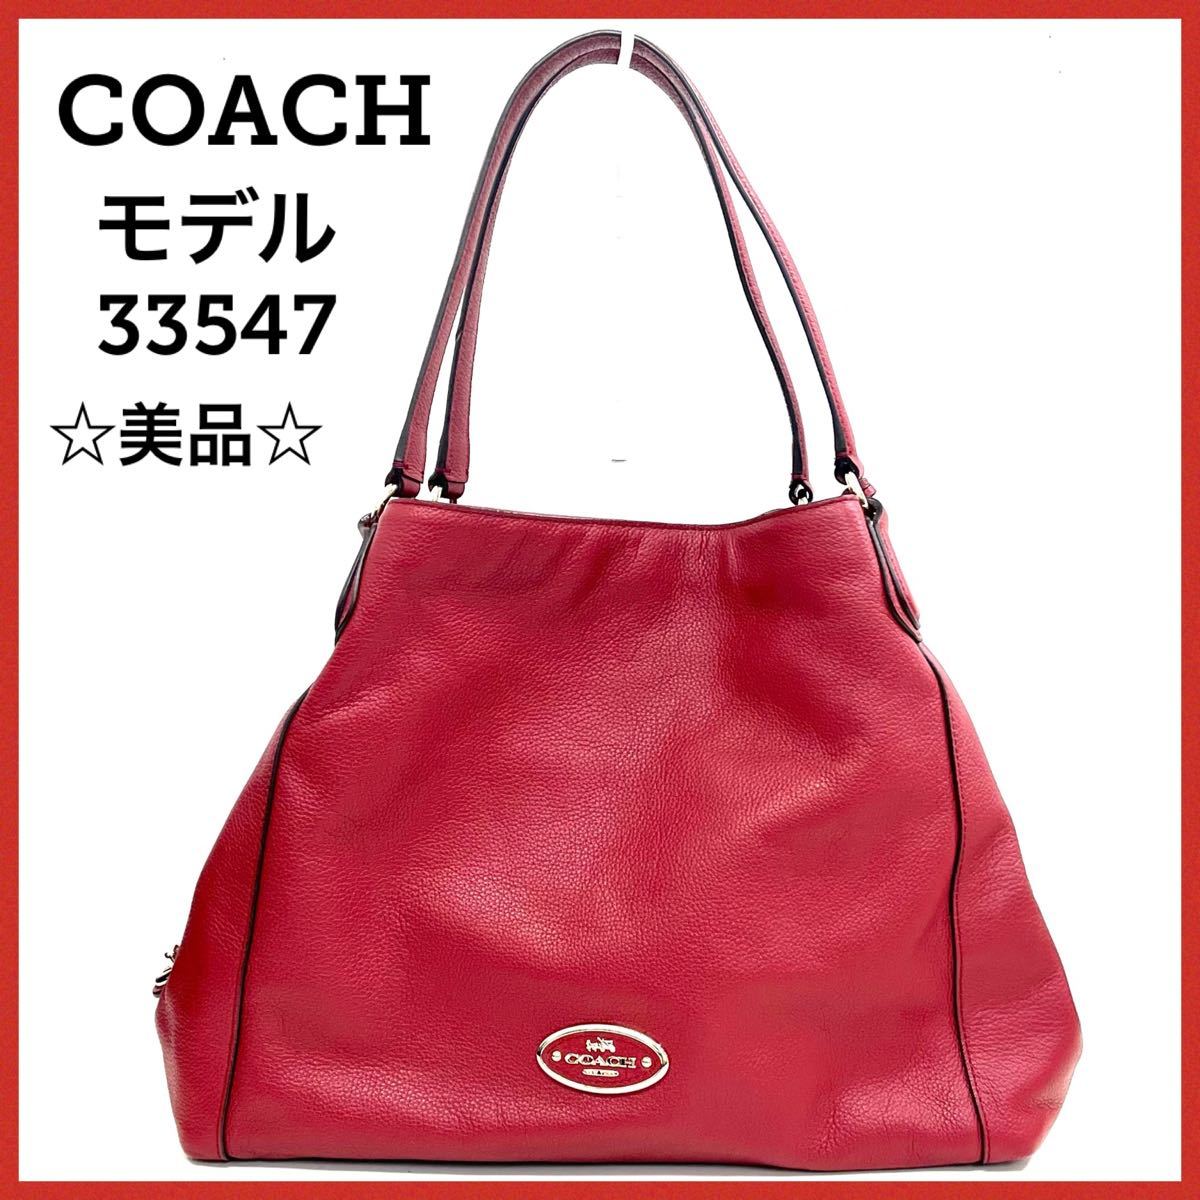 レイシー COACH - COACH女性のファッションハンドバッグの通販 by